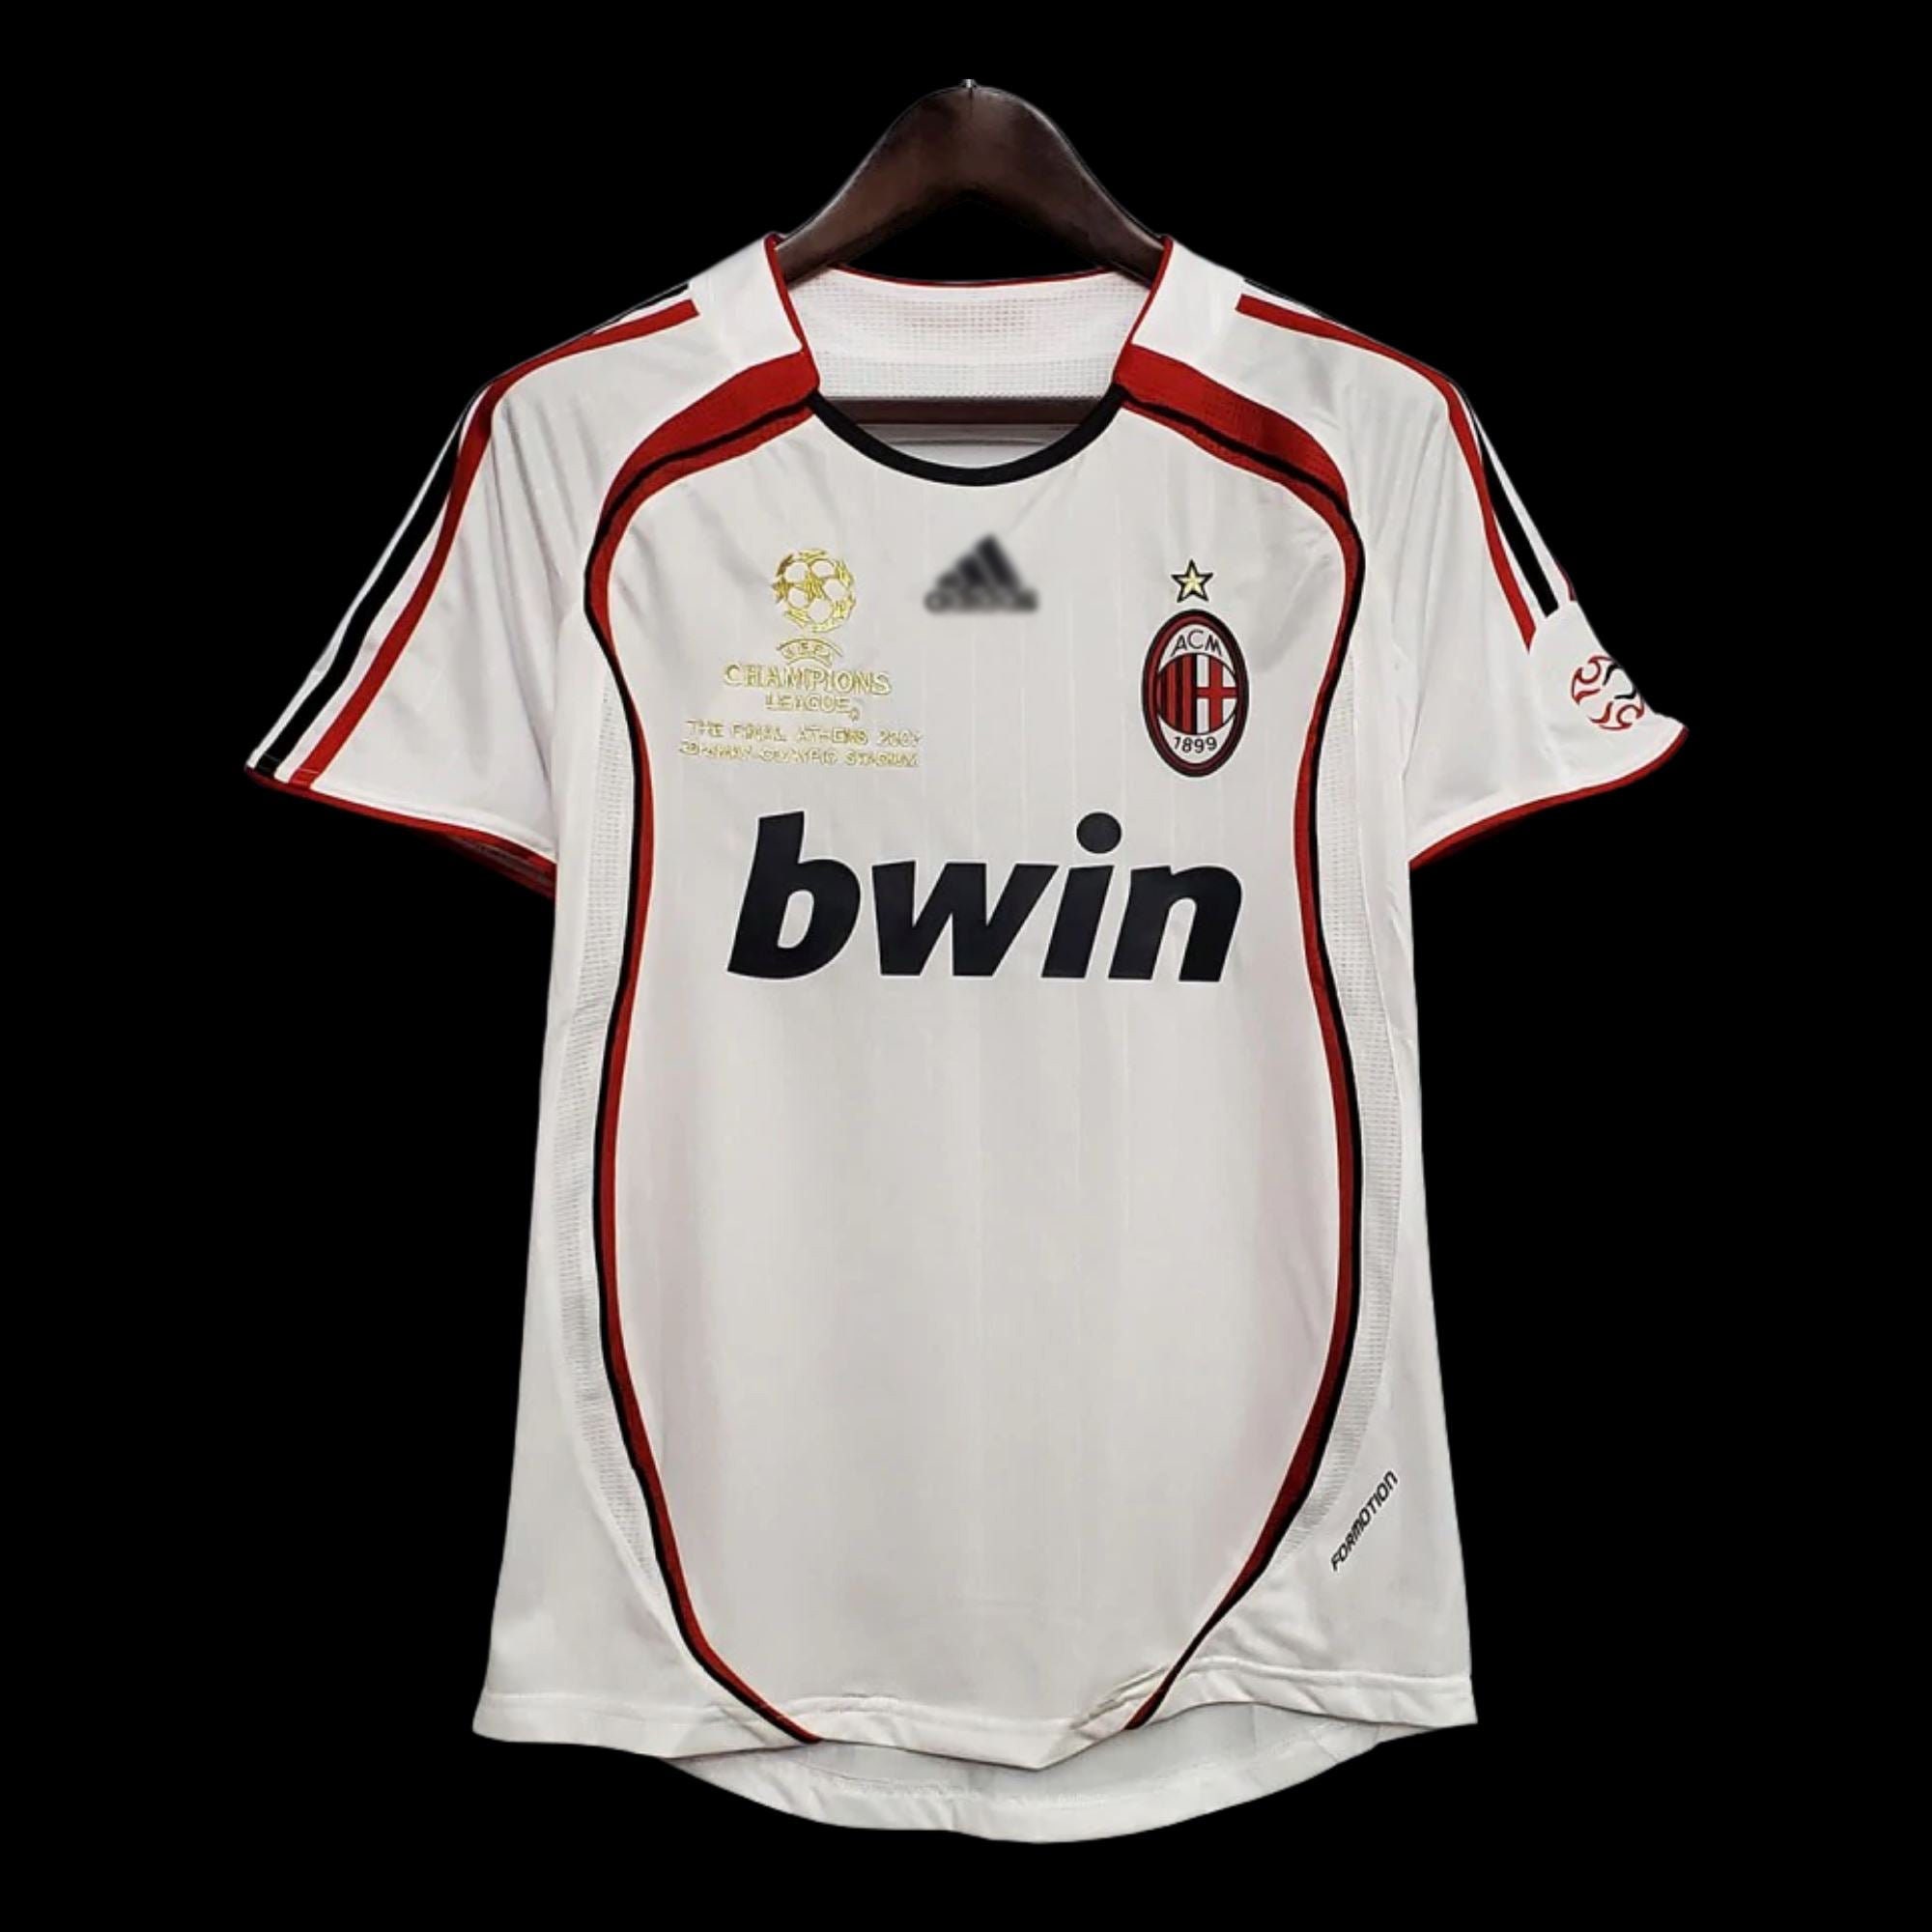 2009-10 AC Milan Player Issue Away Shirt Ronaldinho #80 - NEW - XL